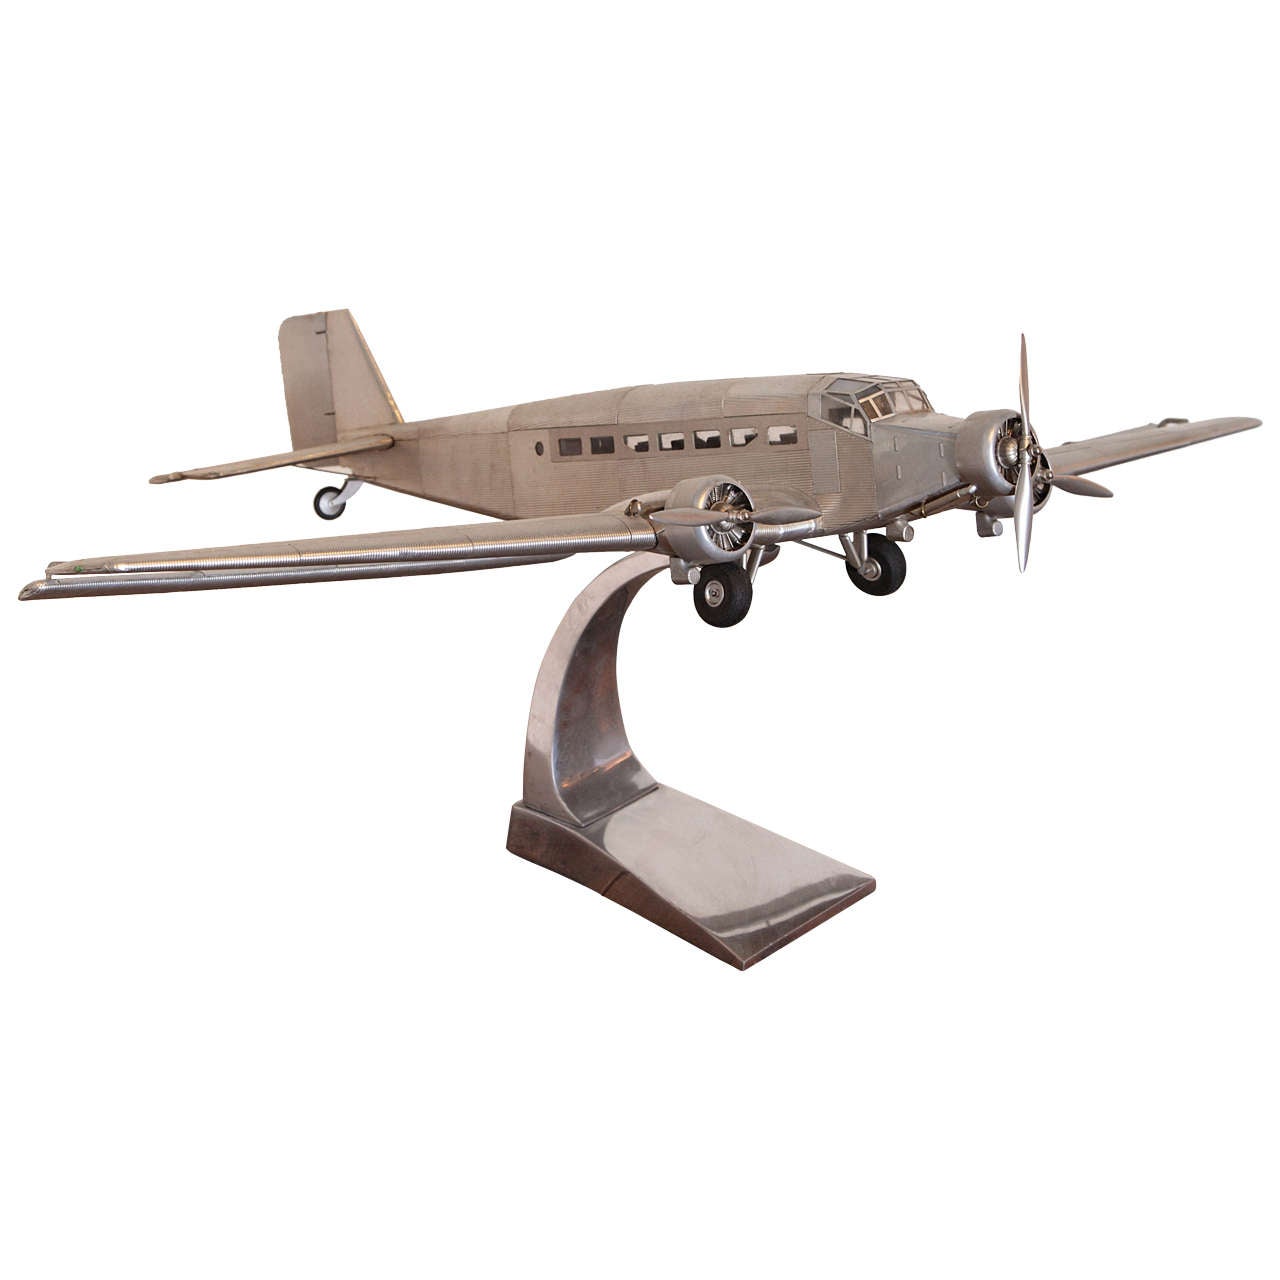 Junkers Ju 52 aeronautical model from Paris